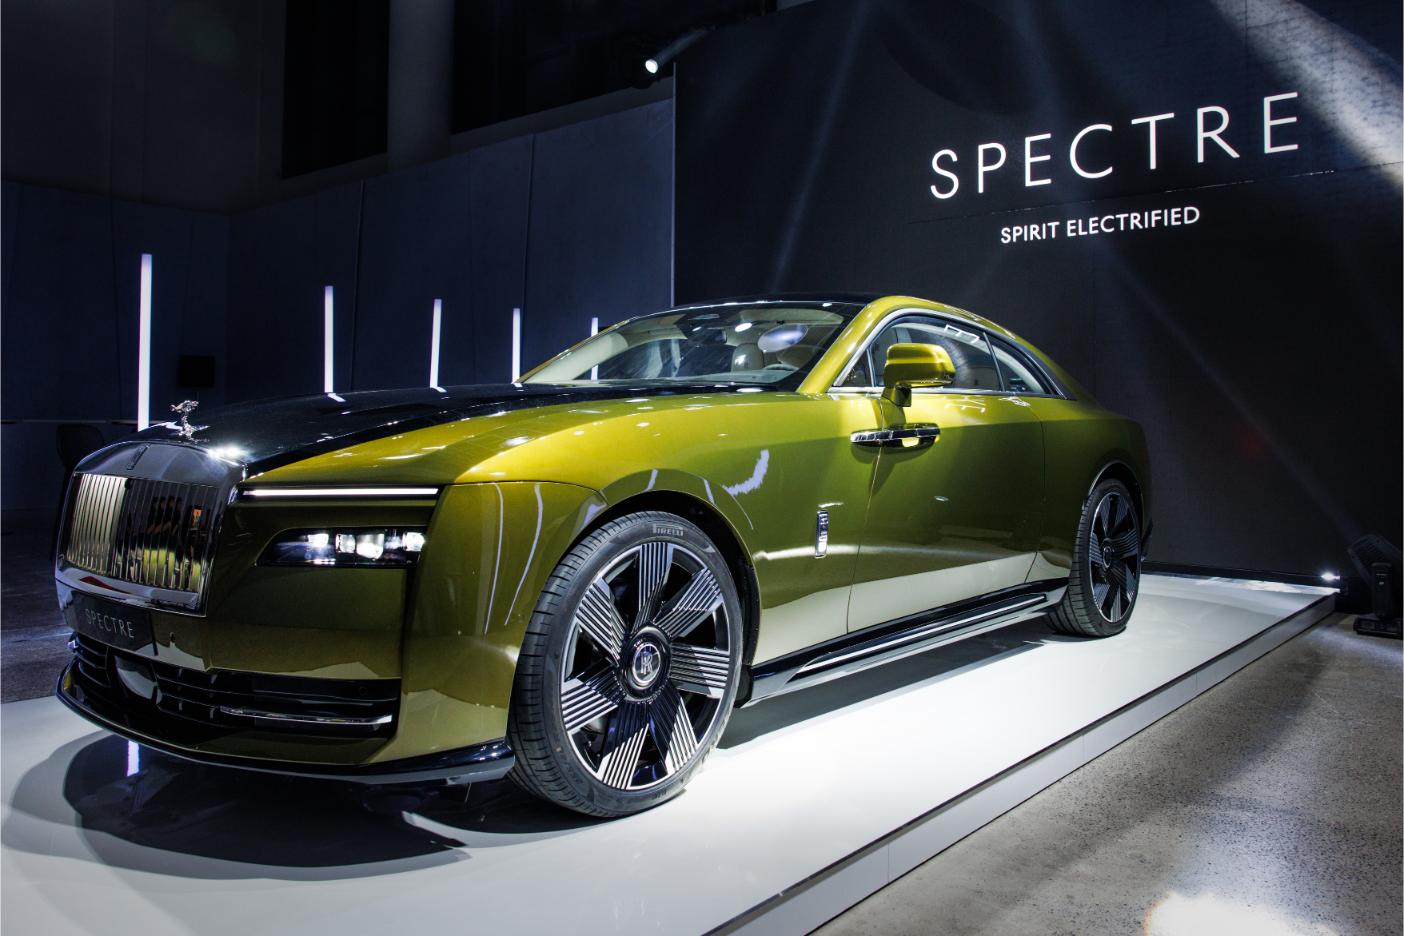 Rolls Royce Spectre 6 Rolls Royce trình làng mẫu xe thuần điện đầu tiên với giá khởi điểm 18 tỷ